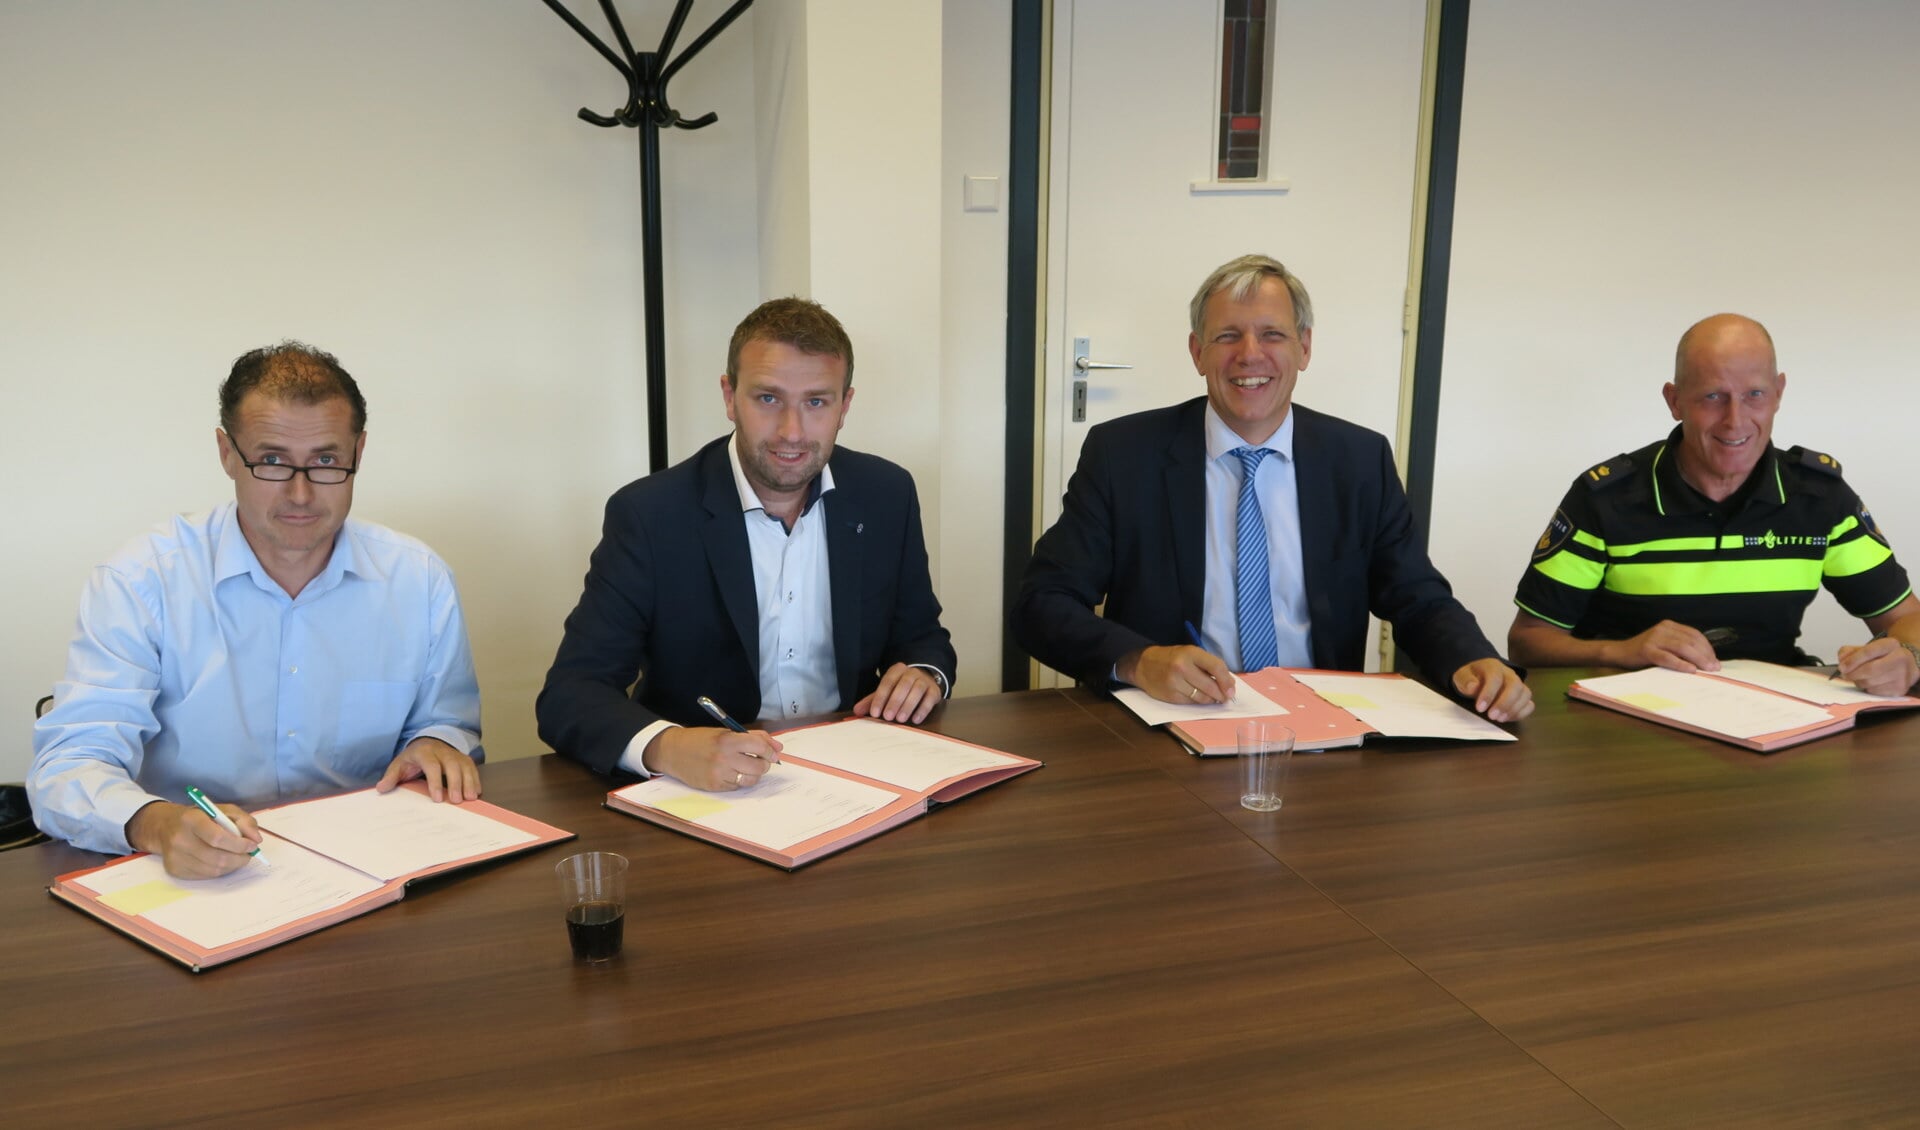 ondertekening van het convenant KVO, v.l.n.r. Jan van der Gugten (SBB), Aron Haasnoot (Huschka Beveiligers), burgemeester ir. C. Visser; P. Koot (teamchef politie)
 